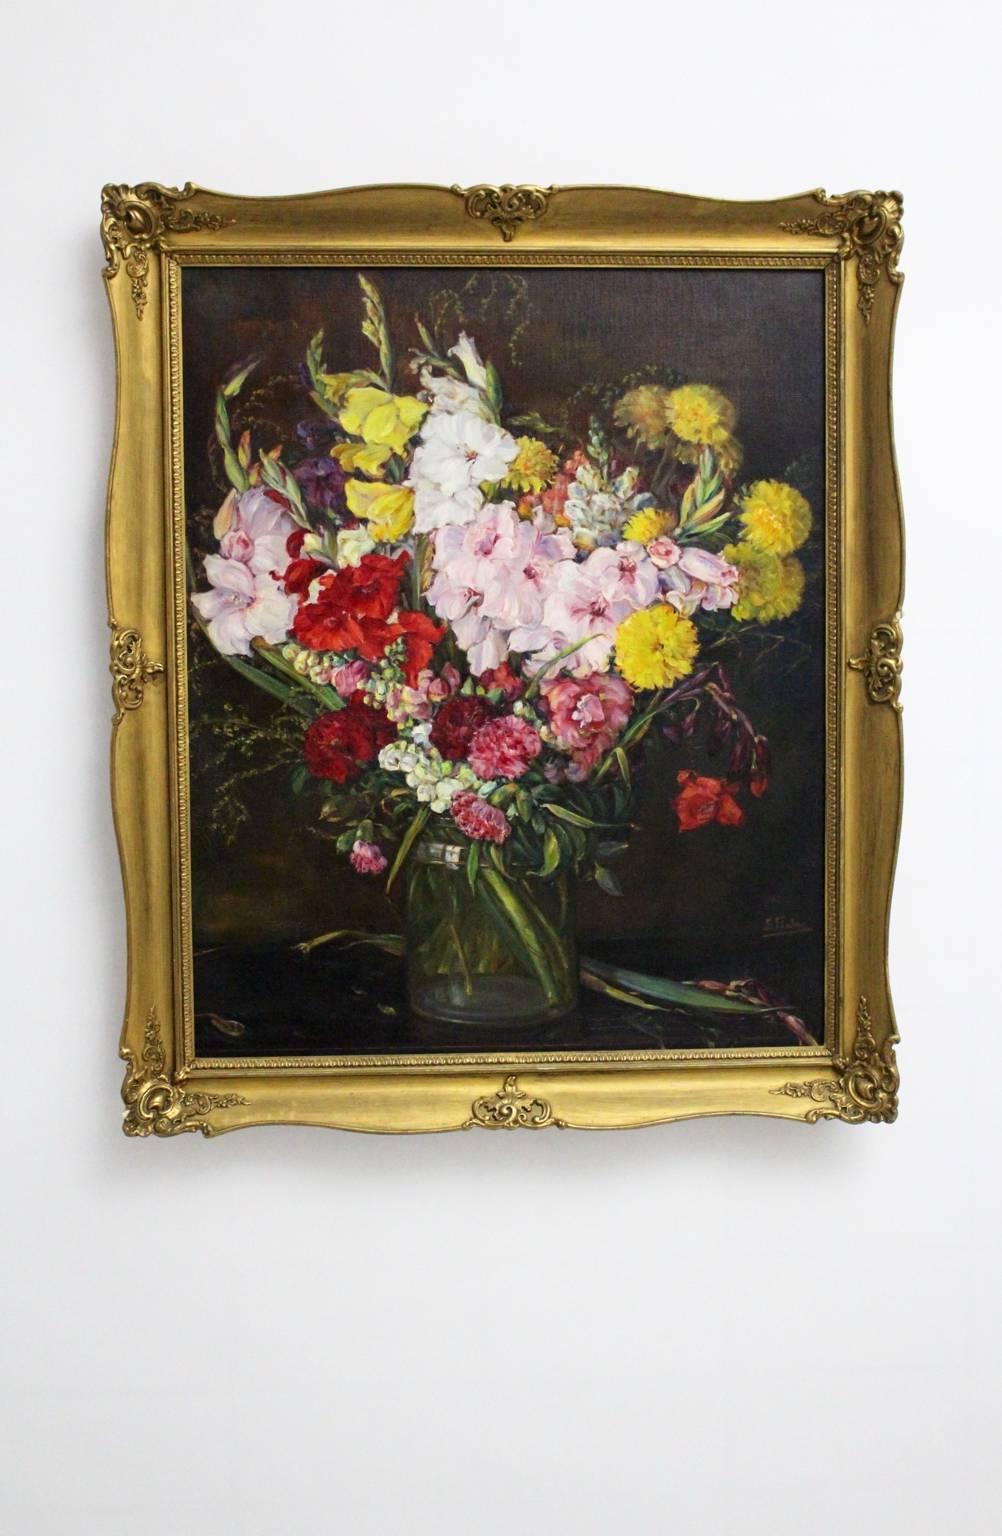 Peinture à l'huile sur toile d'Emil Fiala (1869-1960) avec le motif Gladioli dans un vase en verre.
Signé par Emil Fiala
Le professeur Emil Fiala a participé à de nombreuses expositions et est membre du Künstlerbund (anciennement Hagenbund).
Cette